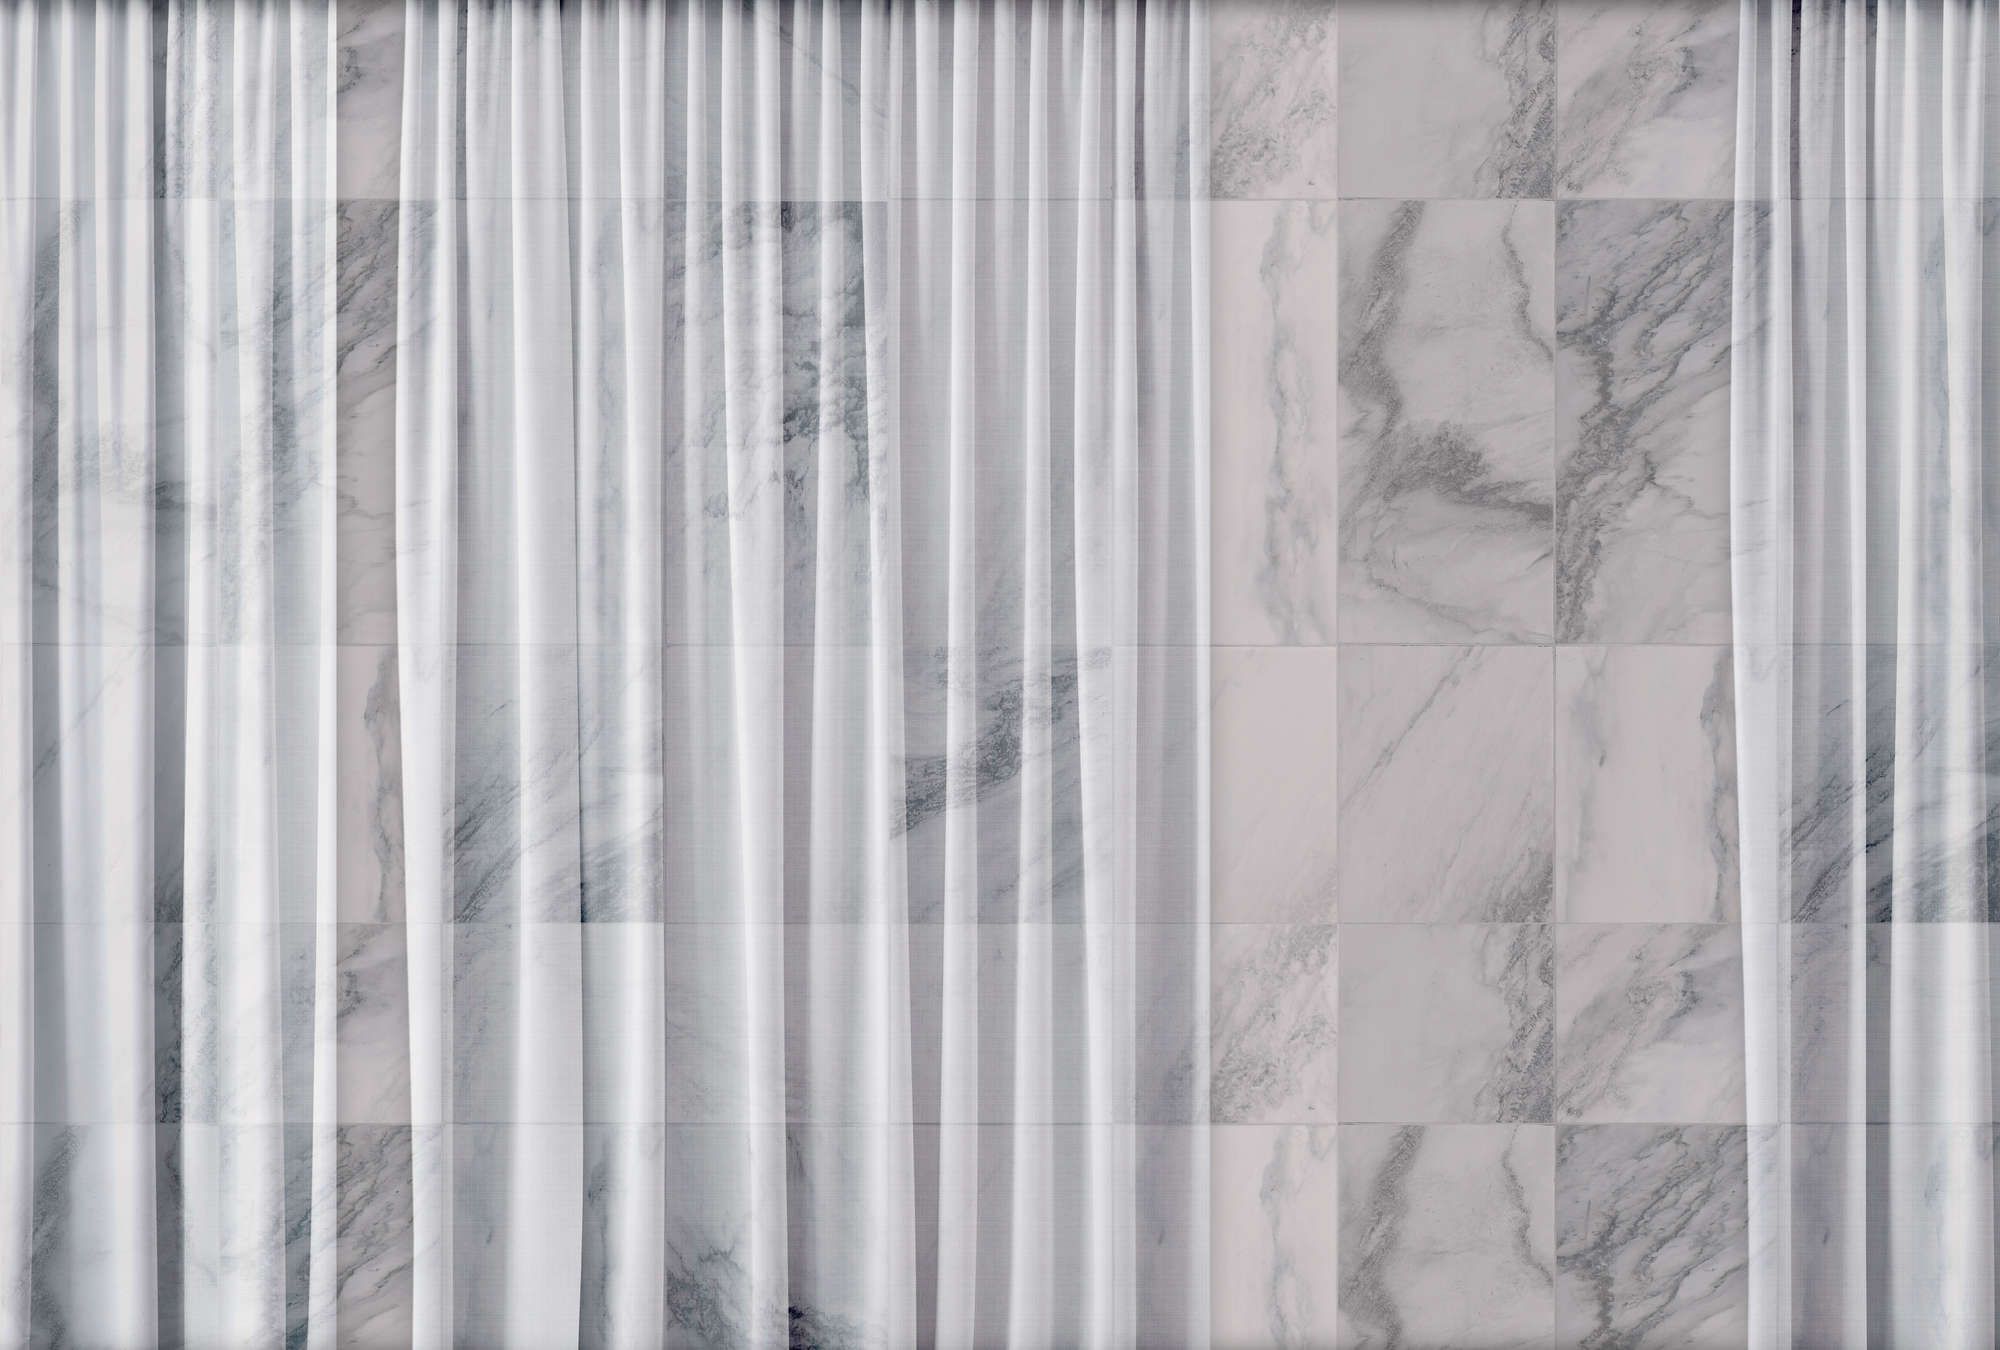             Fototapete »nova 1« - Dezent fallender weißer Vorhang vor Marmorwand – Glattes, leicht perlmutt-schimmerndes Vlies
        